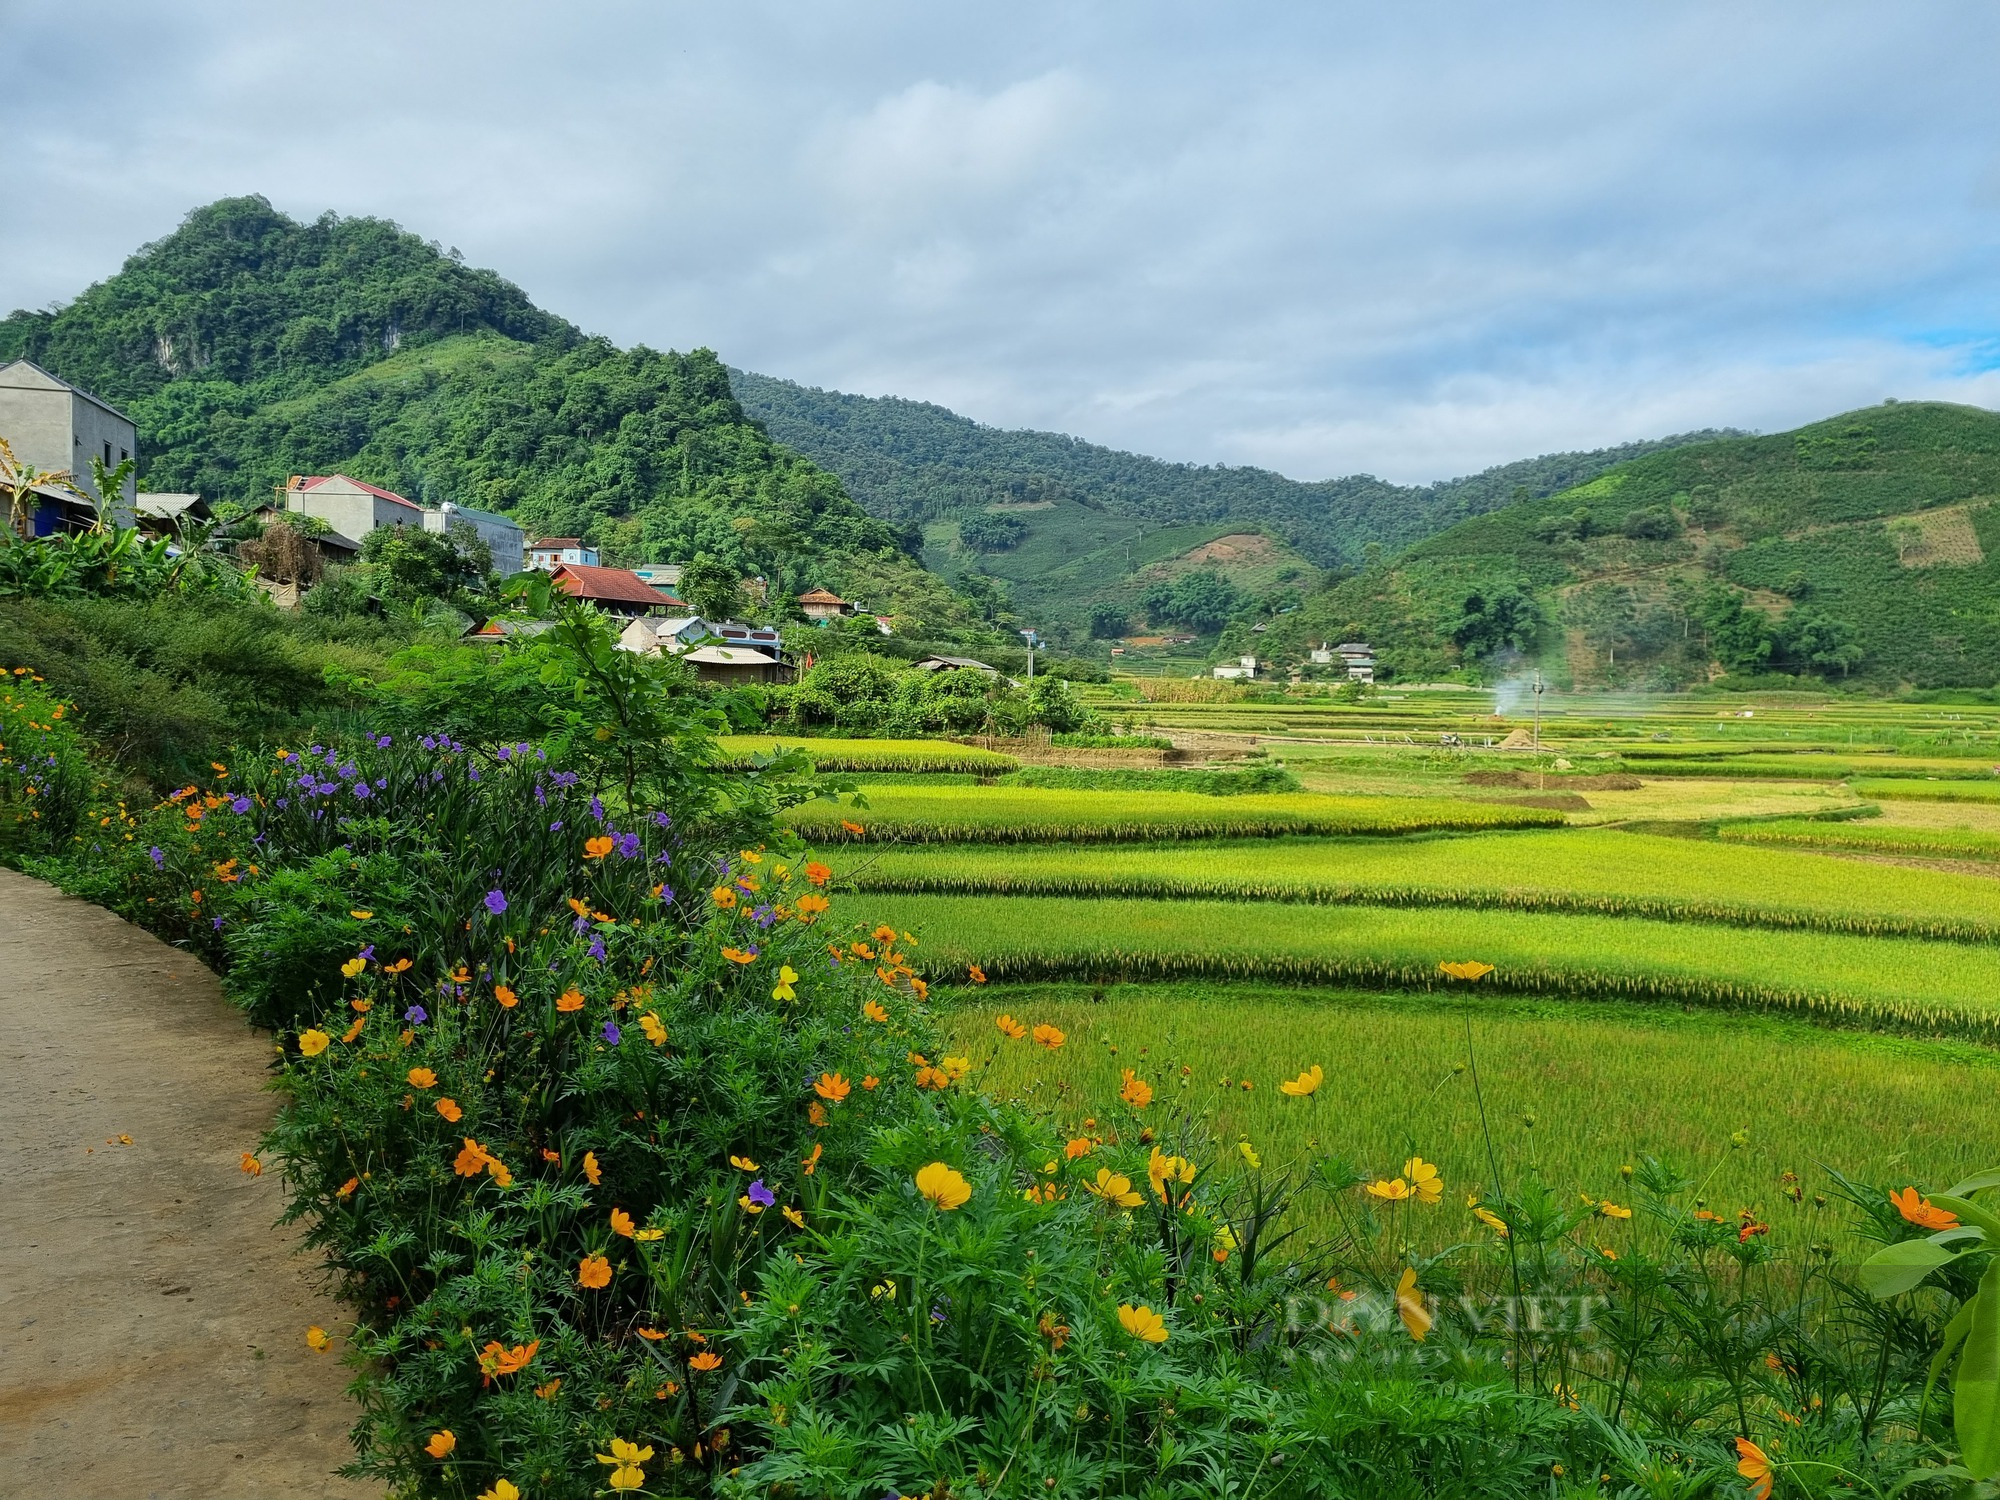 Mê mẩn con đường hoa nông thôn mới đẹp như tranh ở bản người Thái của tỉnh Sơn La - Ảnh 10.